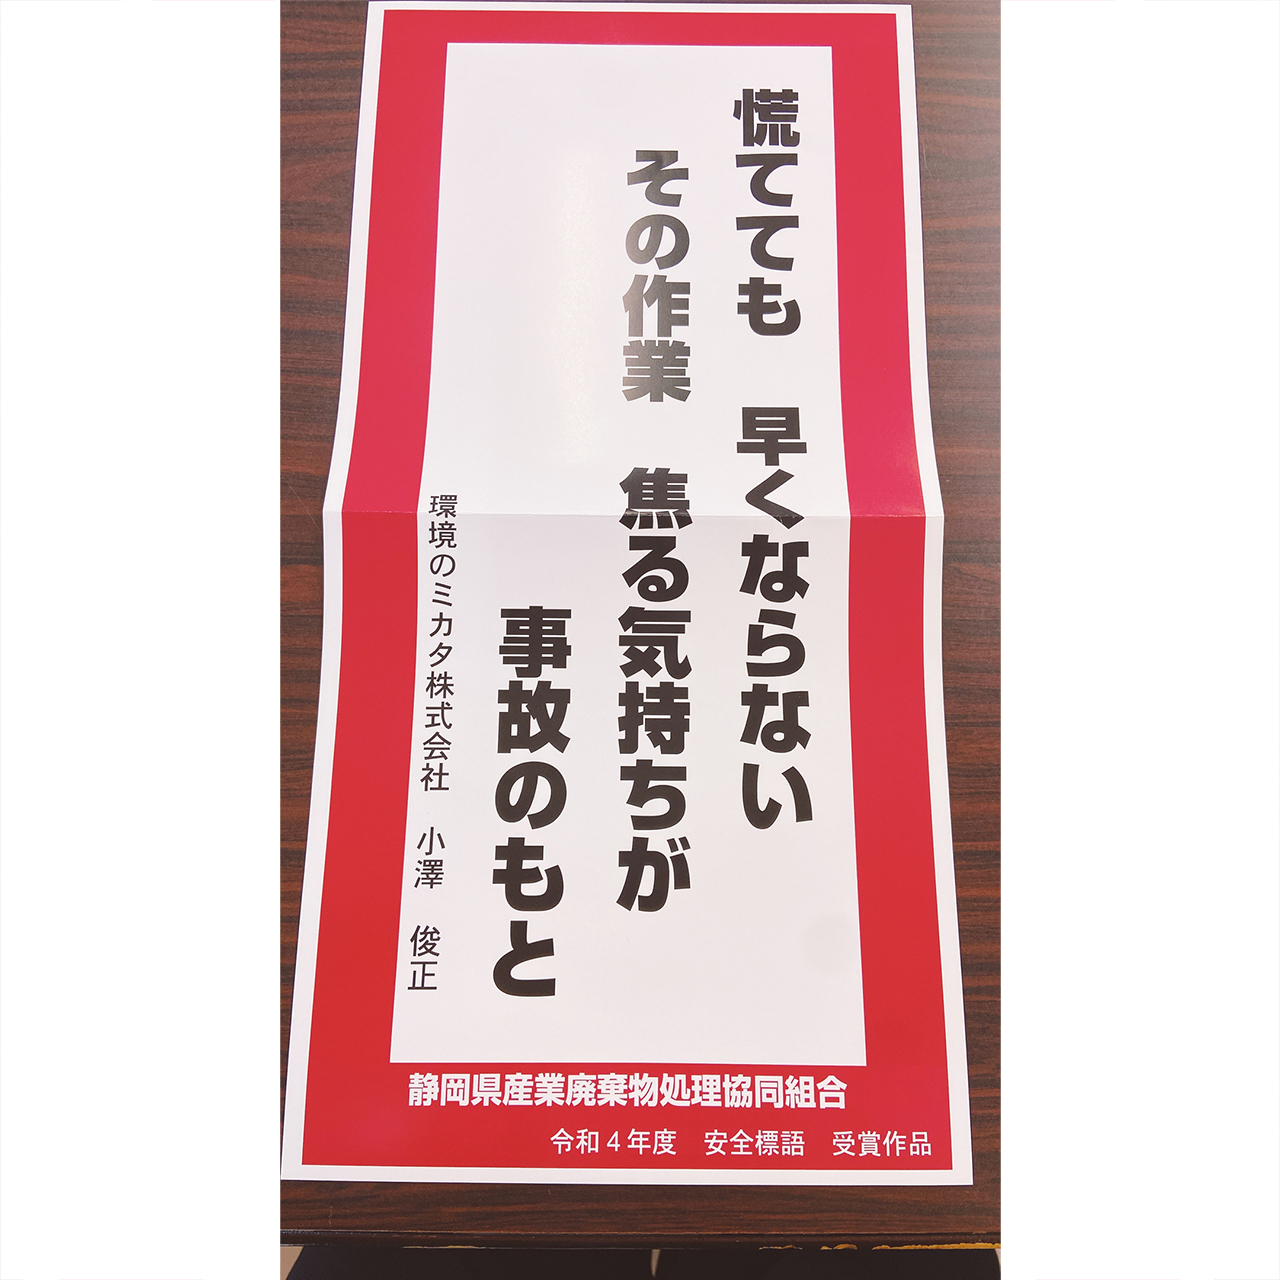 静岡県産業廃棄物処理協同組合の安全標語に採用されました